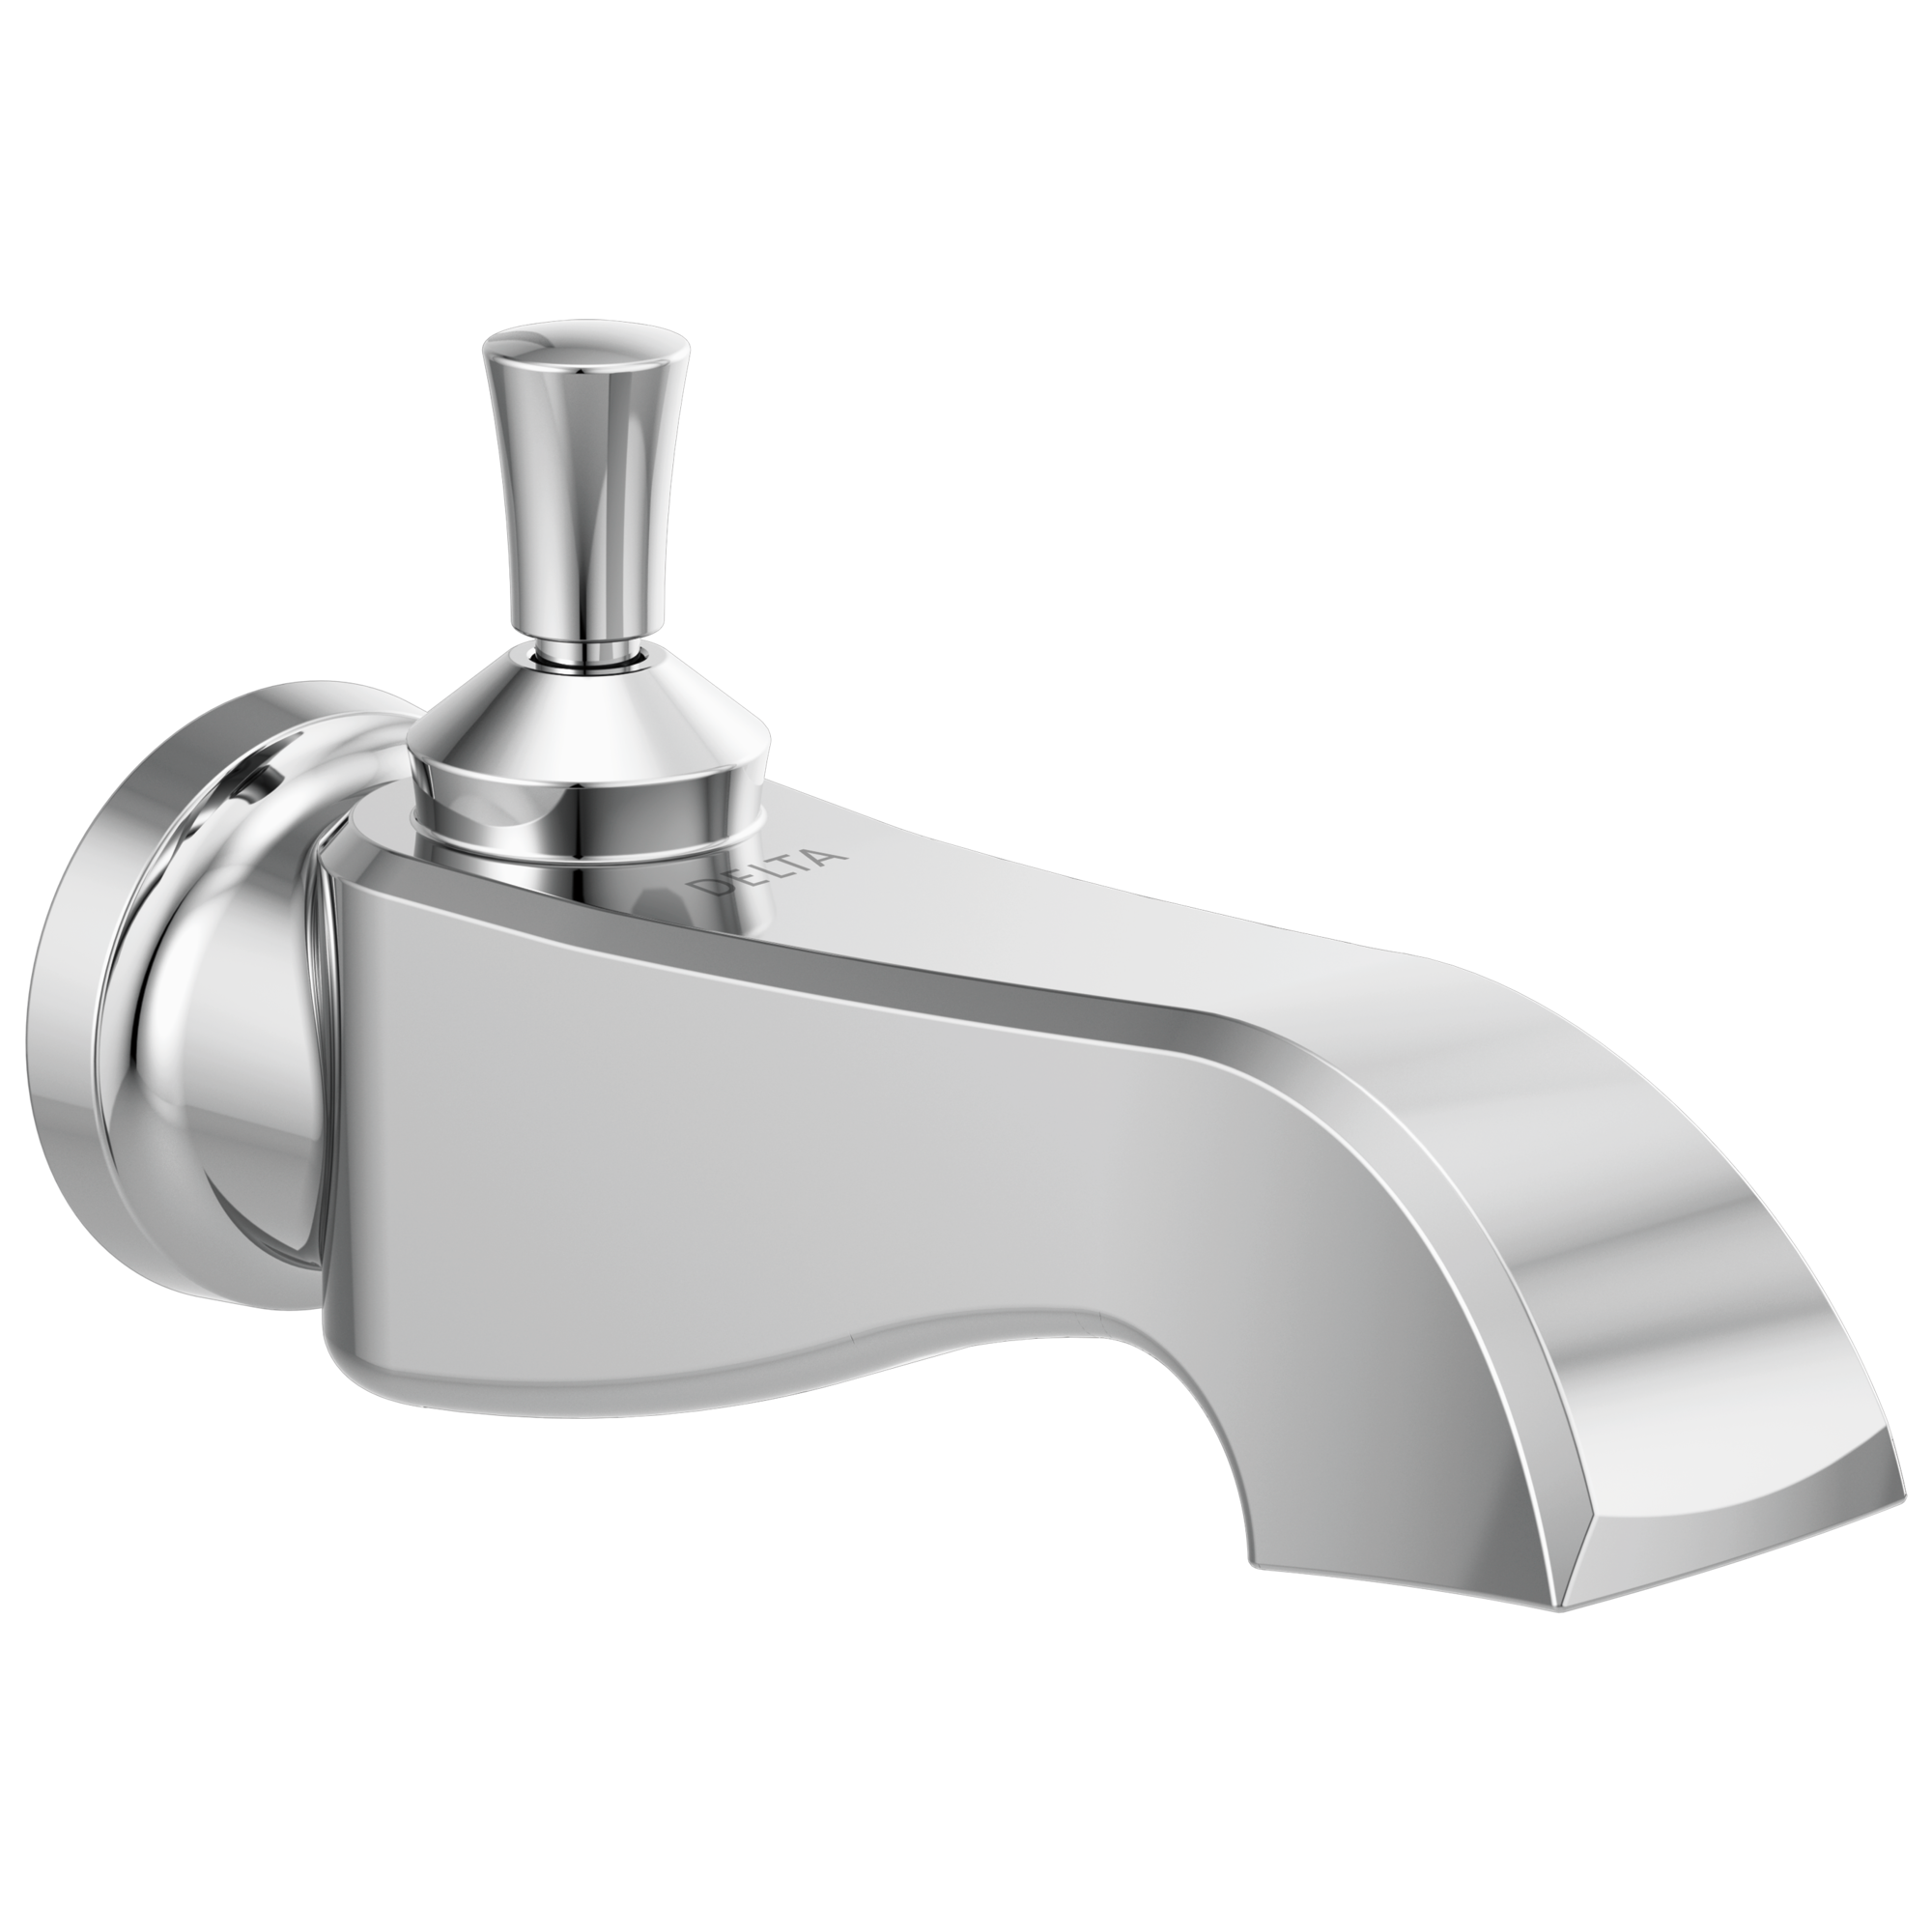 Details about   Bathroom Bathtub Component Taps Shower Mixer Faucet Tub Extra Long Spout Filler 